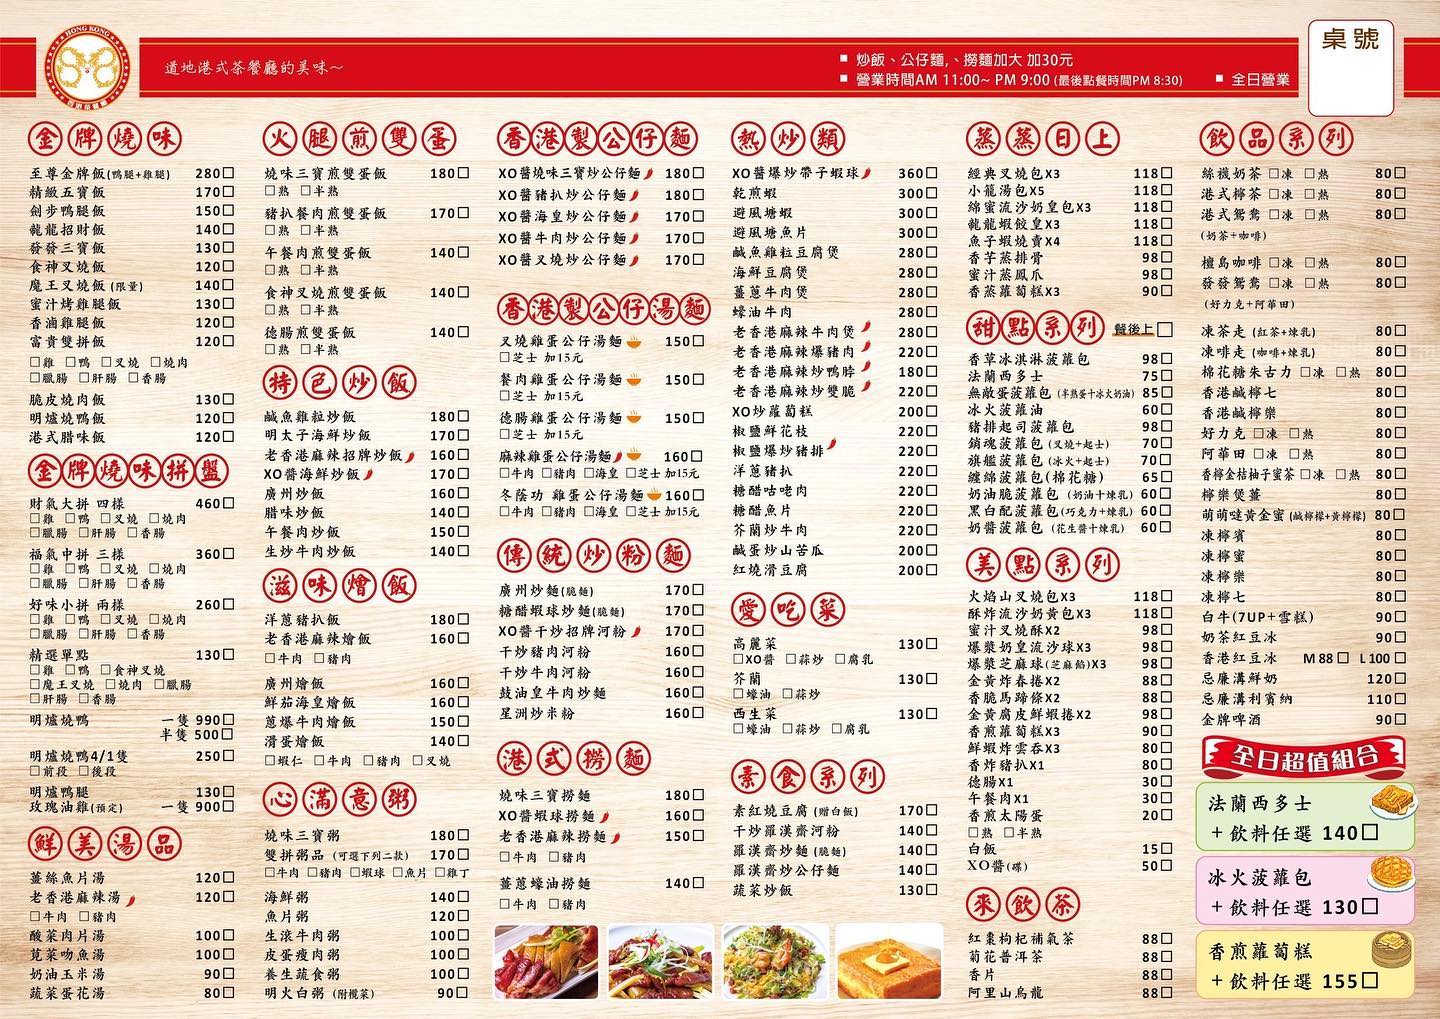 叉燒,大安區美食,港式,茶餐廳,龍龍 餐廳,㡣龍香港茶餐廳